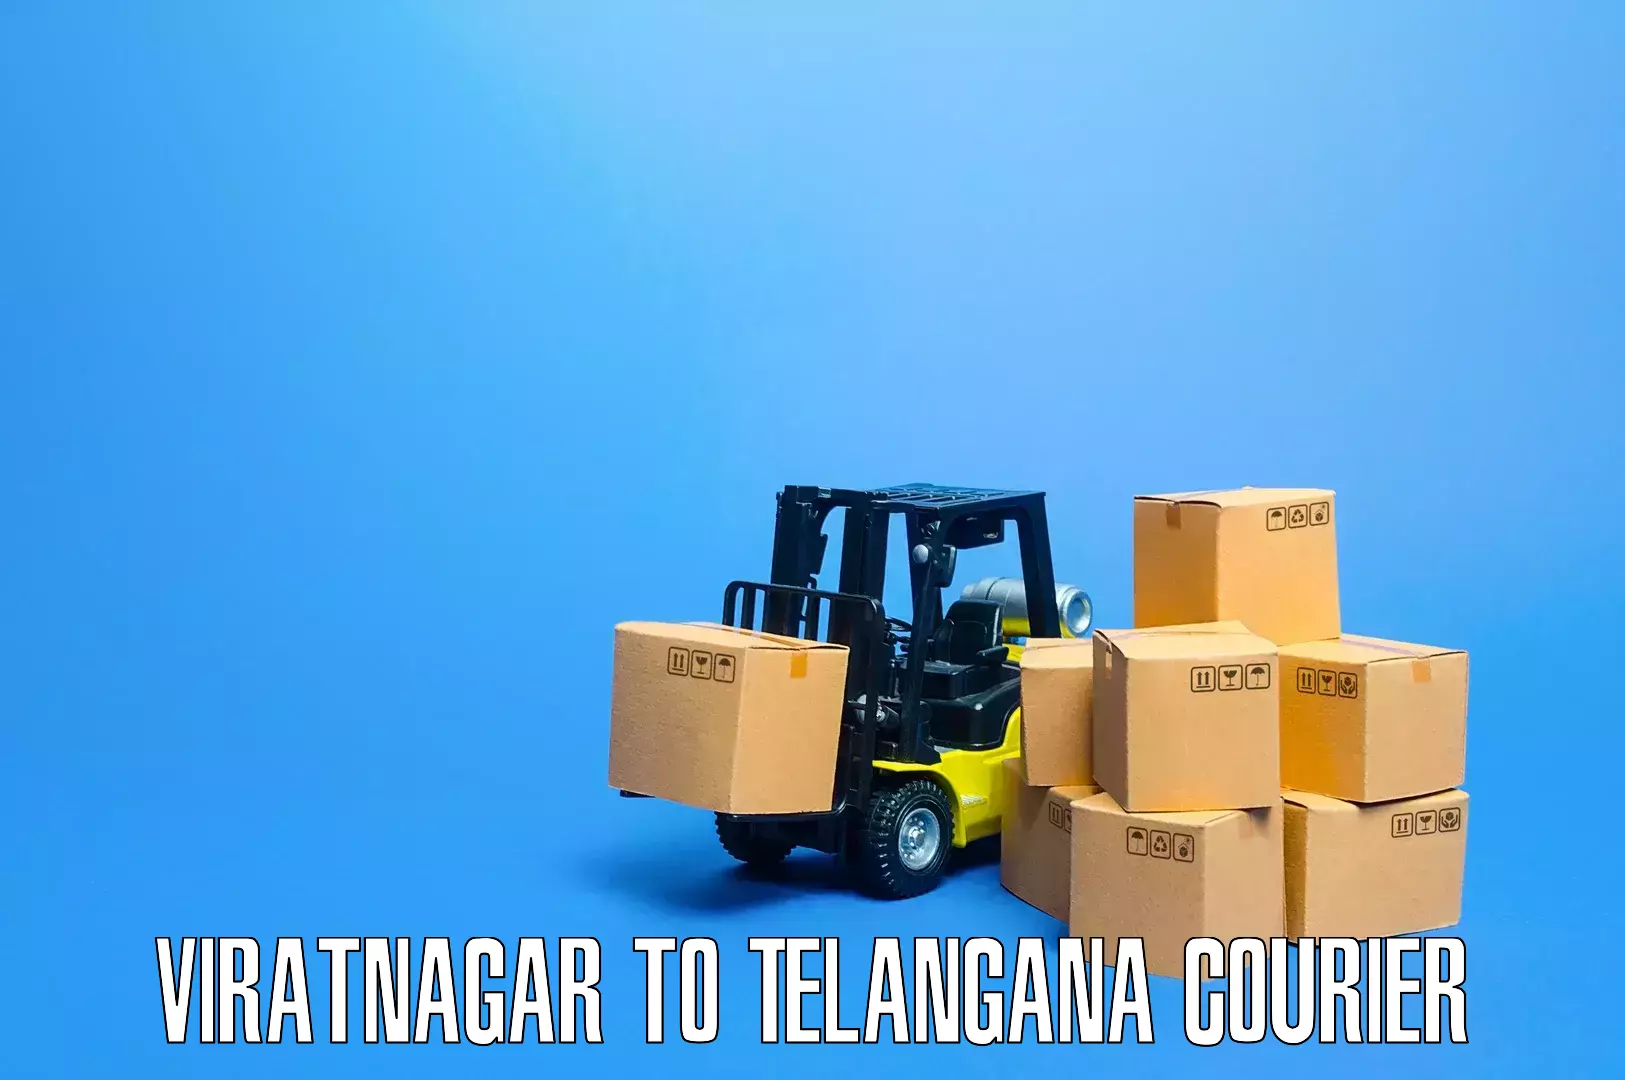 Efficient moving and packing Viratnagar to Telangana